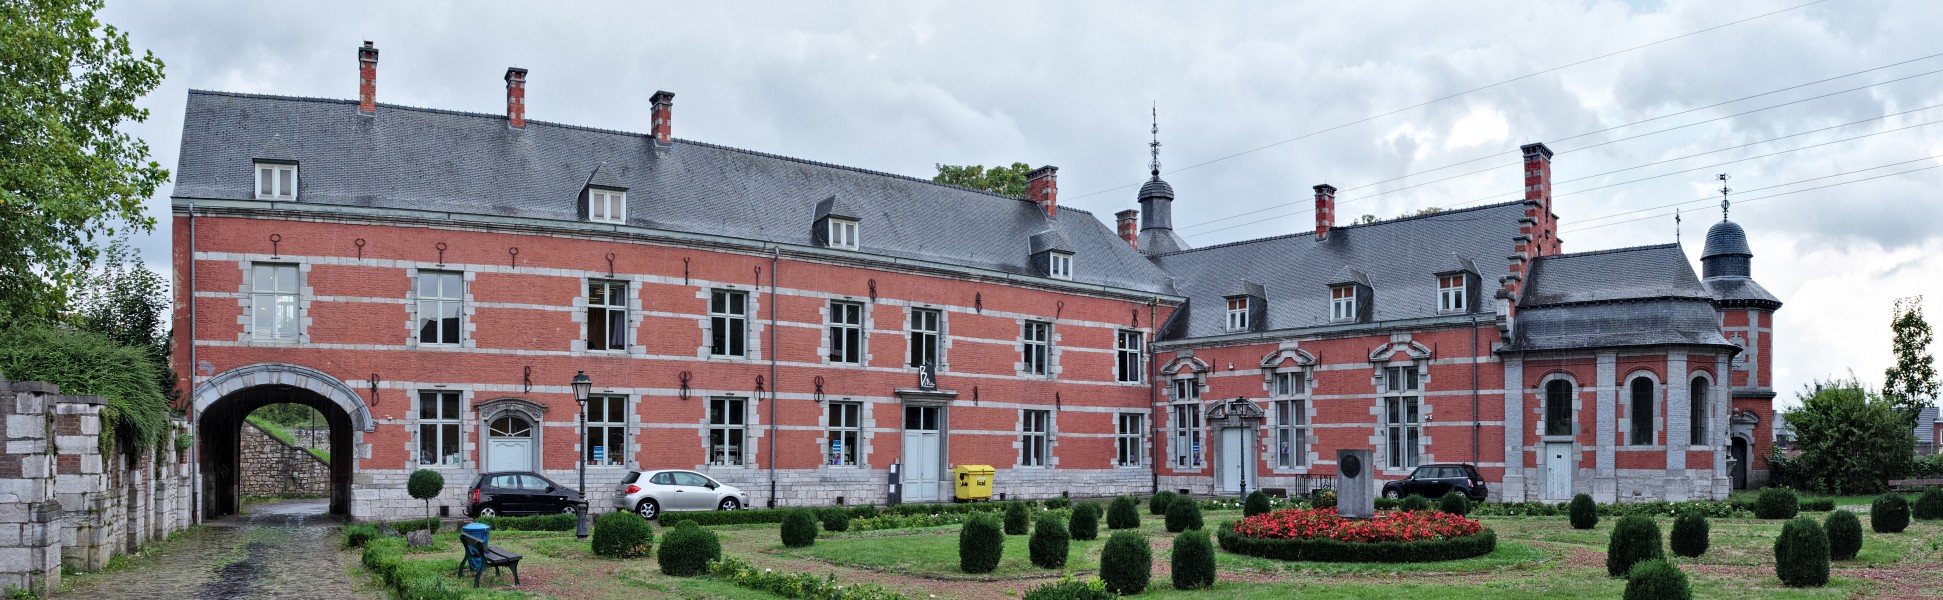 Château Bilquin-de Cartier in Marchienne-au-Pont, Charleroi (DSCF7726-DSCF7728)